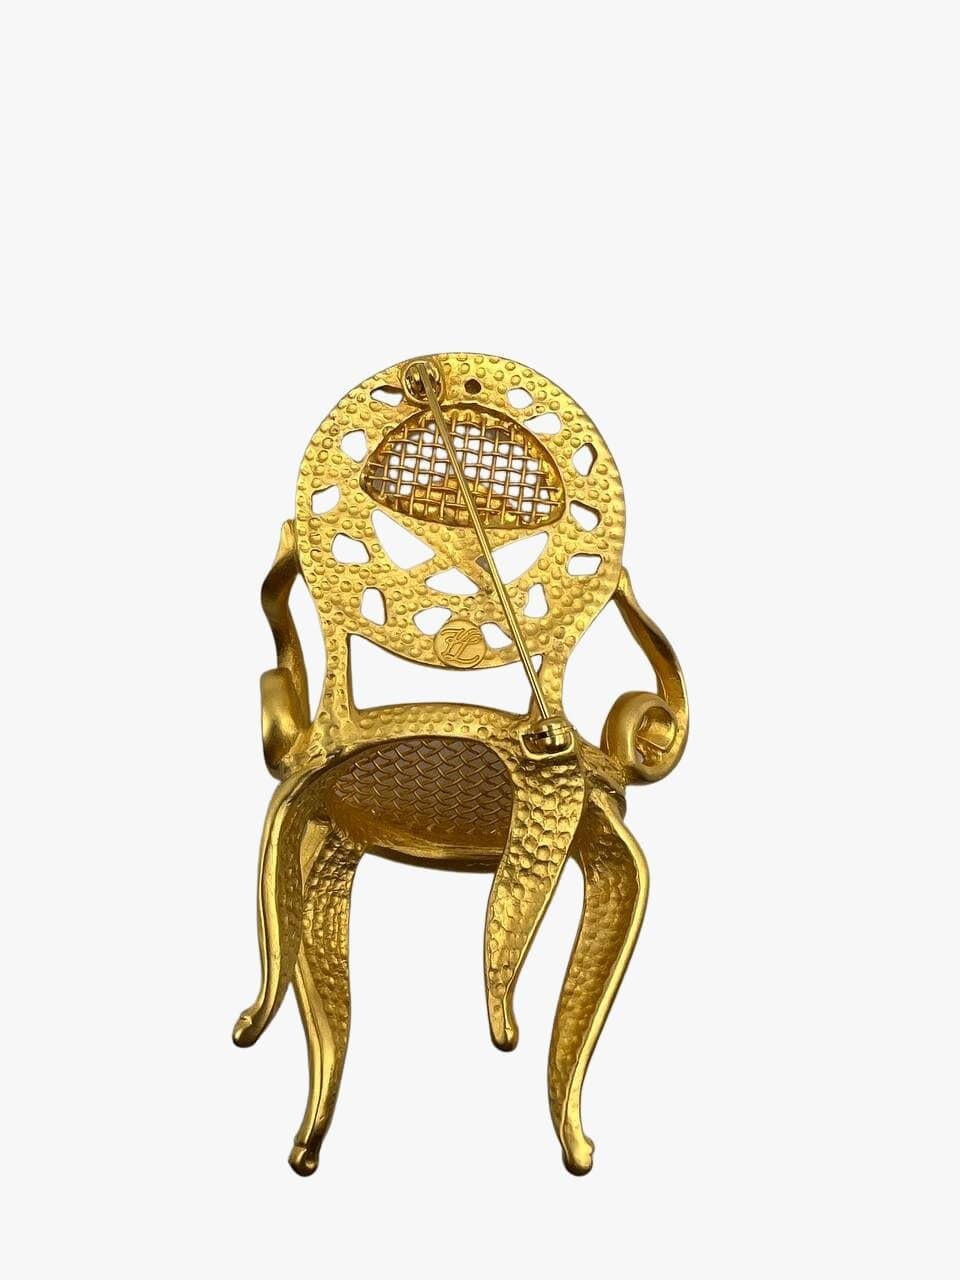 Broche vintage Karl Lagerfeld en plaqué or 24k représentant une chaise de style Louis XV. La broche est ornée du monogramme de l'éventail et du KL, emblématiques de Lagerfeld. 

Signé.

Période : 1980s

État : excellent

Taille : longueur : 9cm,